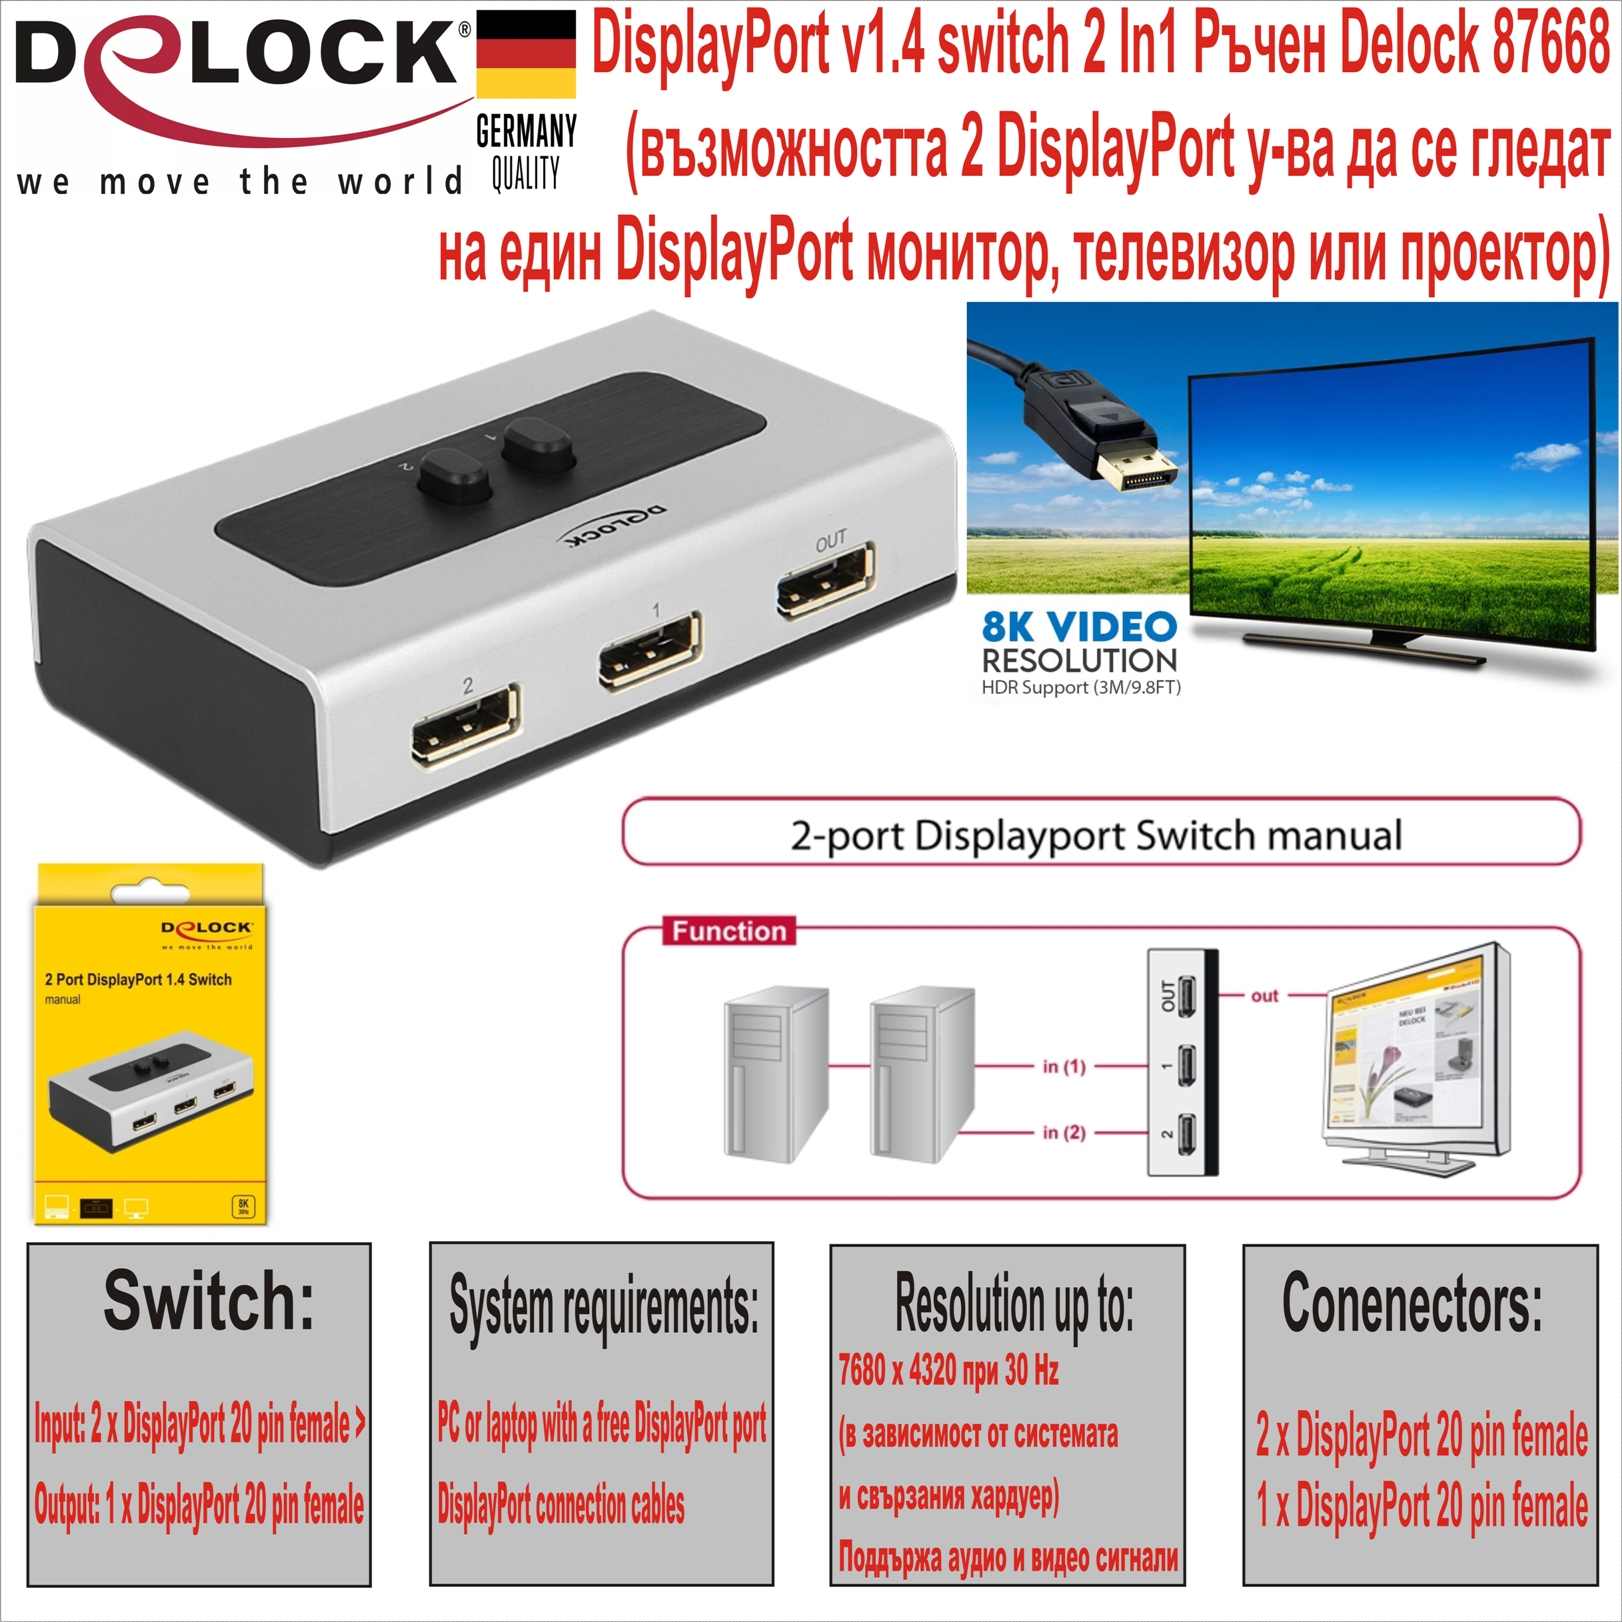 DisplayPort v1.4 switch 2 In/1 Delock 87668